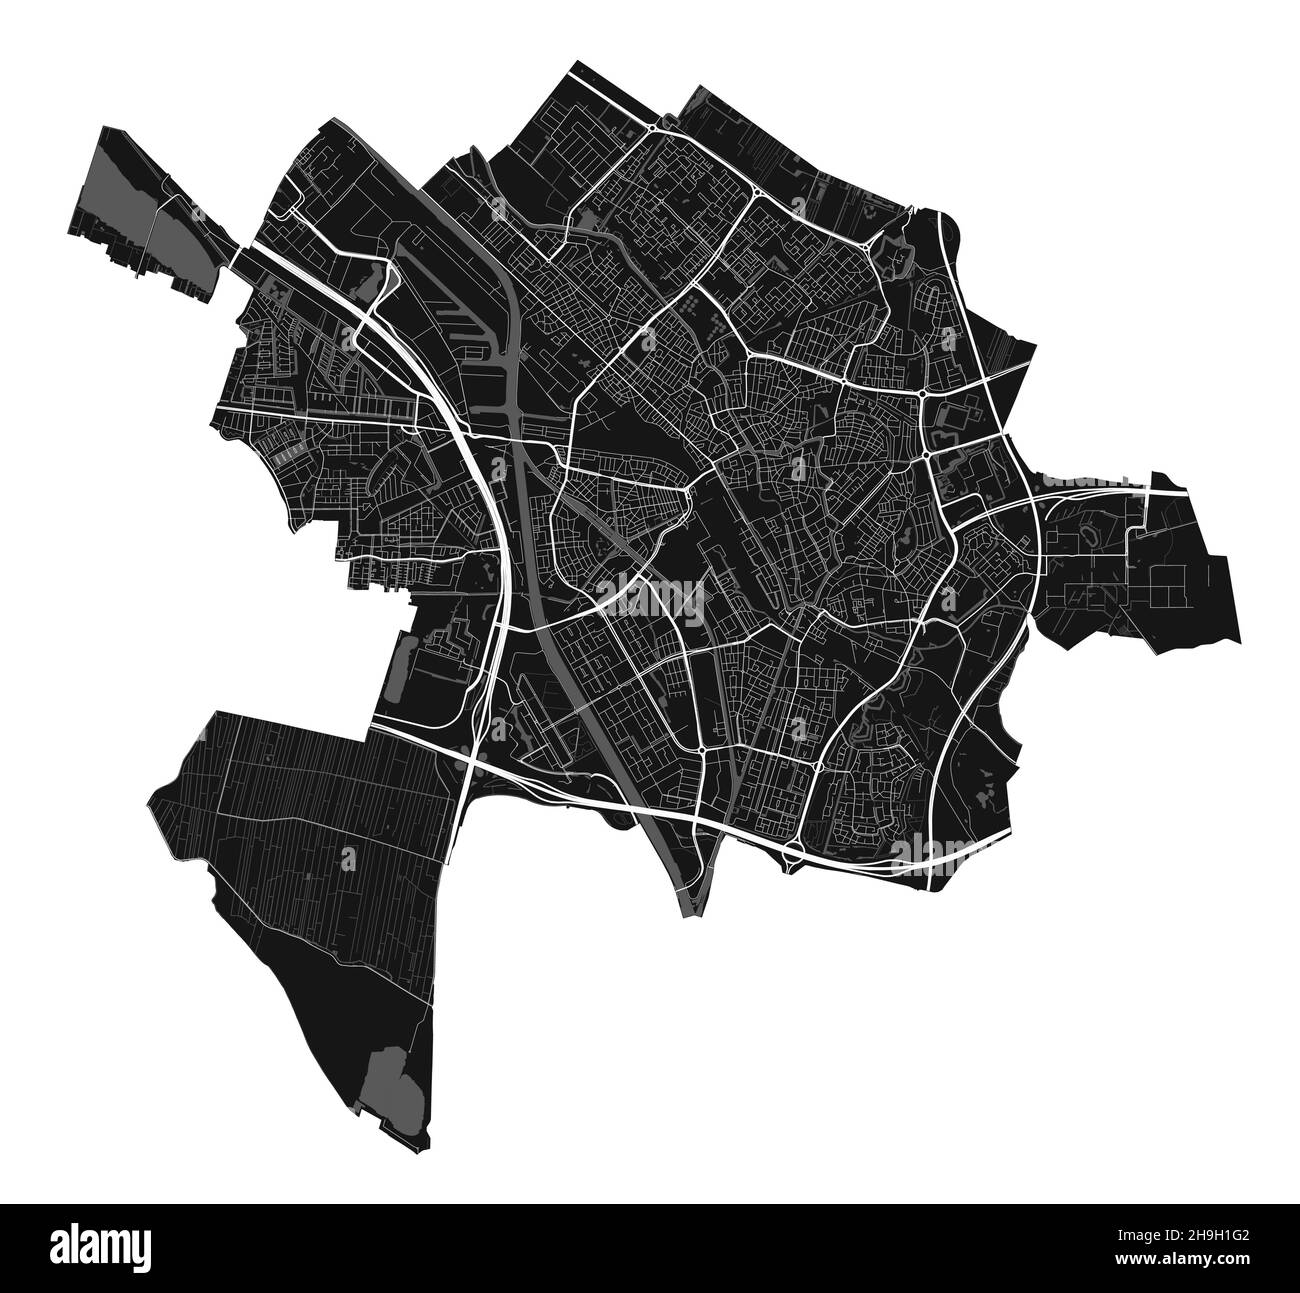 Mappa di Utrecht. Mappa vettoriale dettagliata dell'area amministrativa della città di Utrecht. Paesaggio urbano poster vista aria metropolitana. Terra nera con strade bianche, strade e Illustrazione Vettoriale